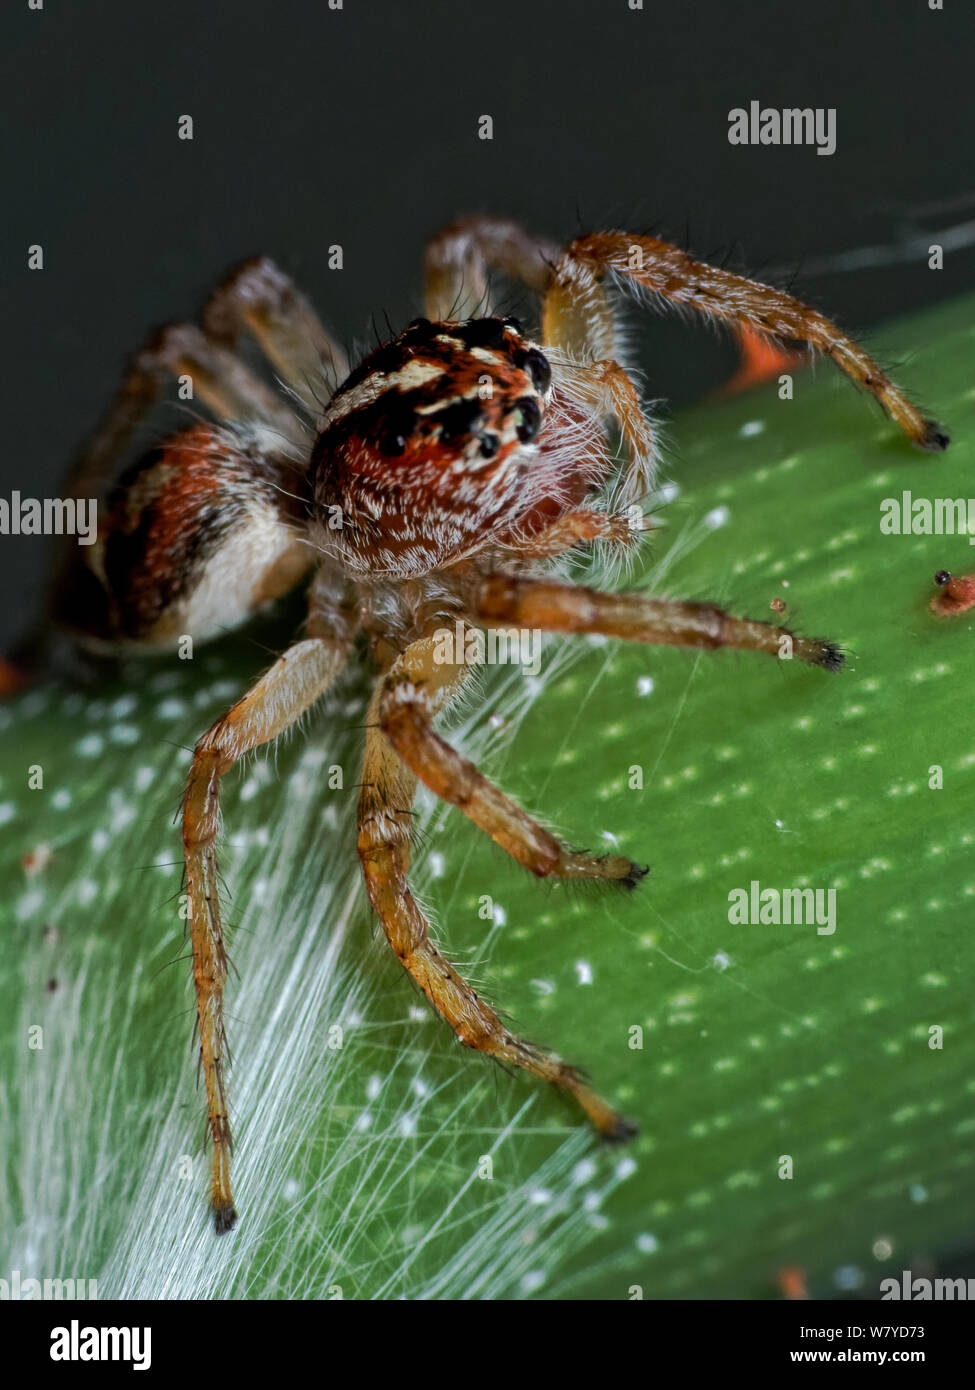 Frigga jumping Spider (Der), Makro der Spinne auf ein Blatt von einem tropischen Garten, zeigt die Spinne Augen im Detail Stockfoto